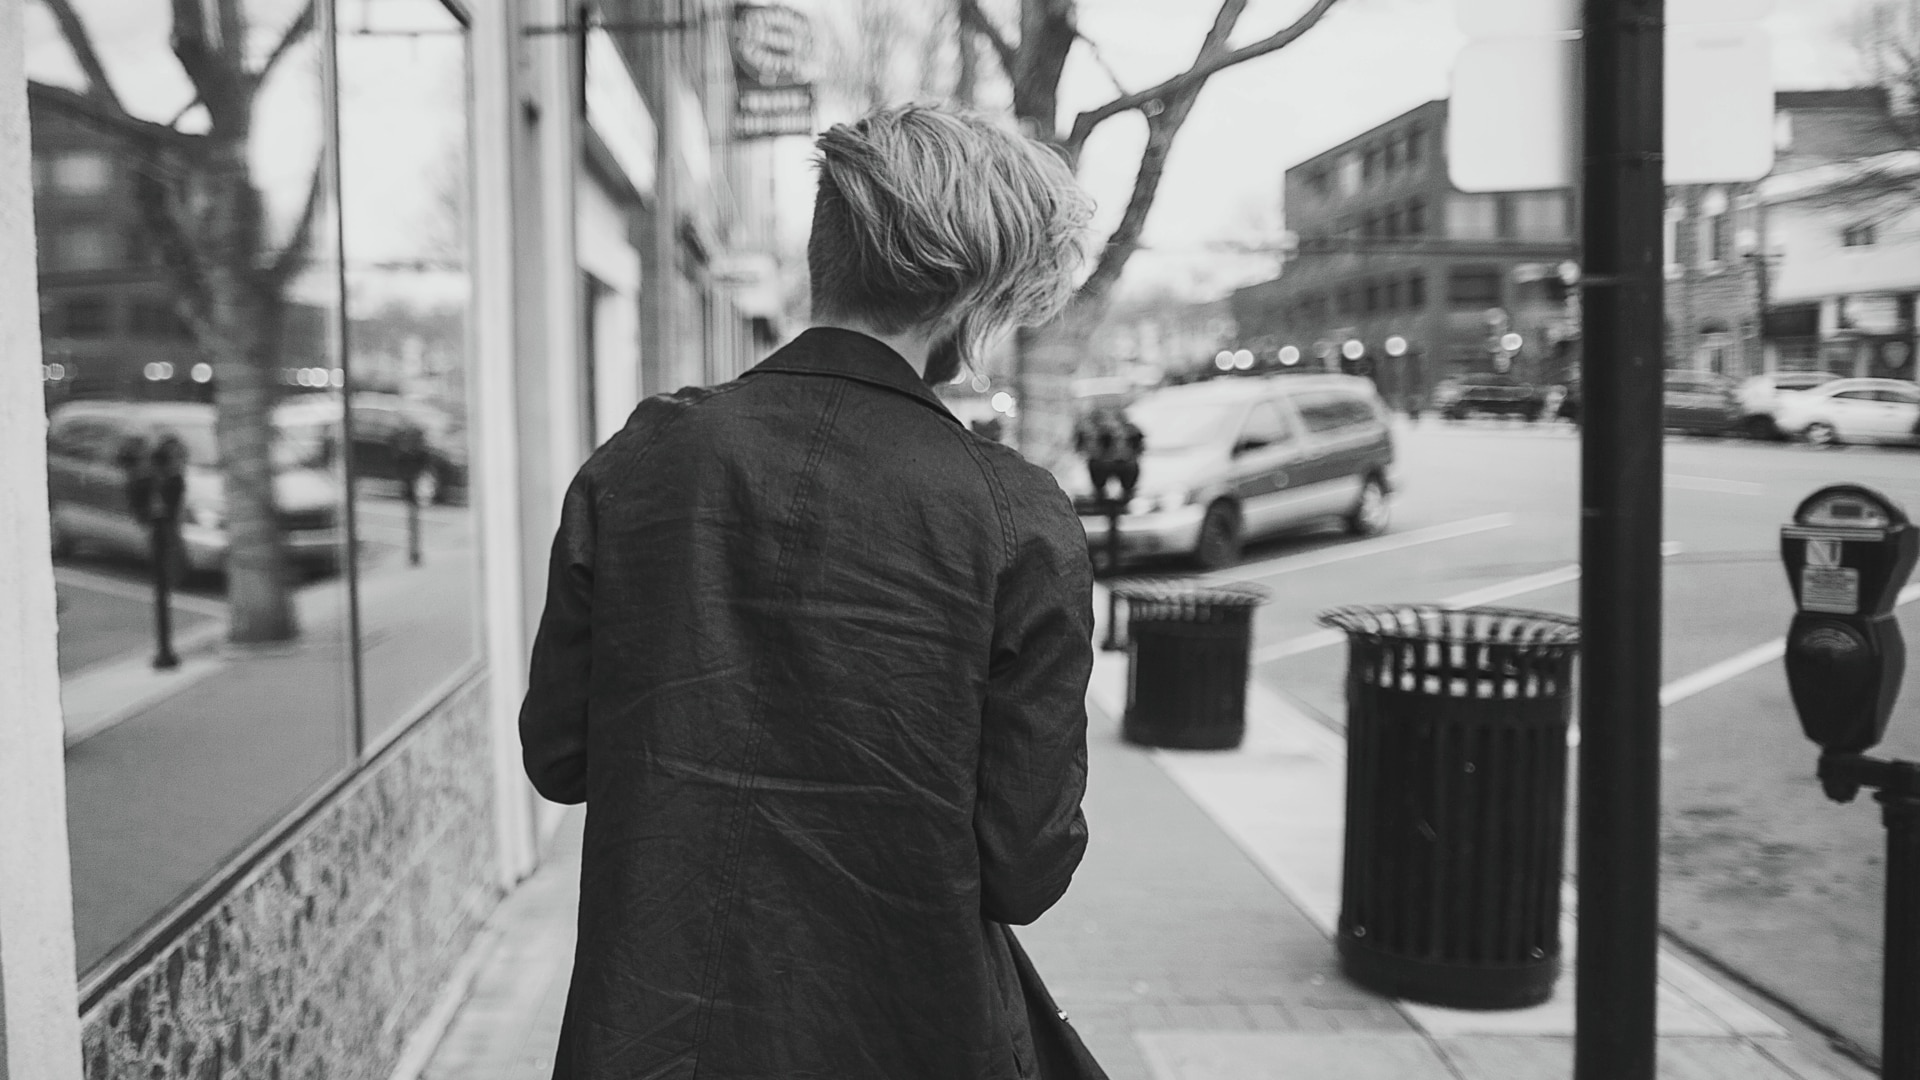 Un hombre de pelo largo, caminando por una calle de una ciudad.